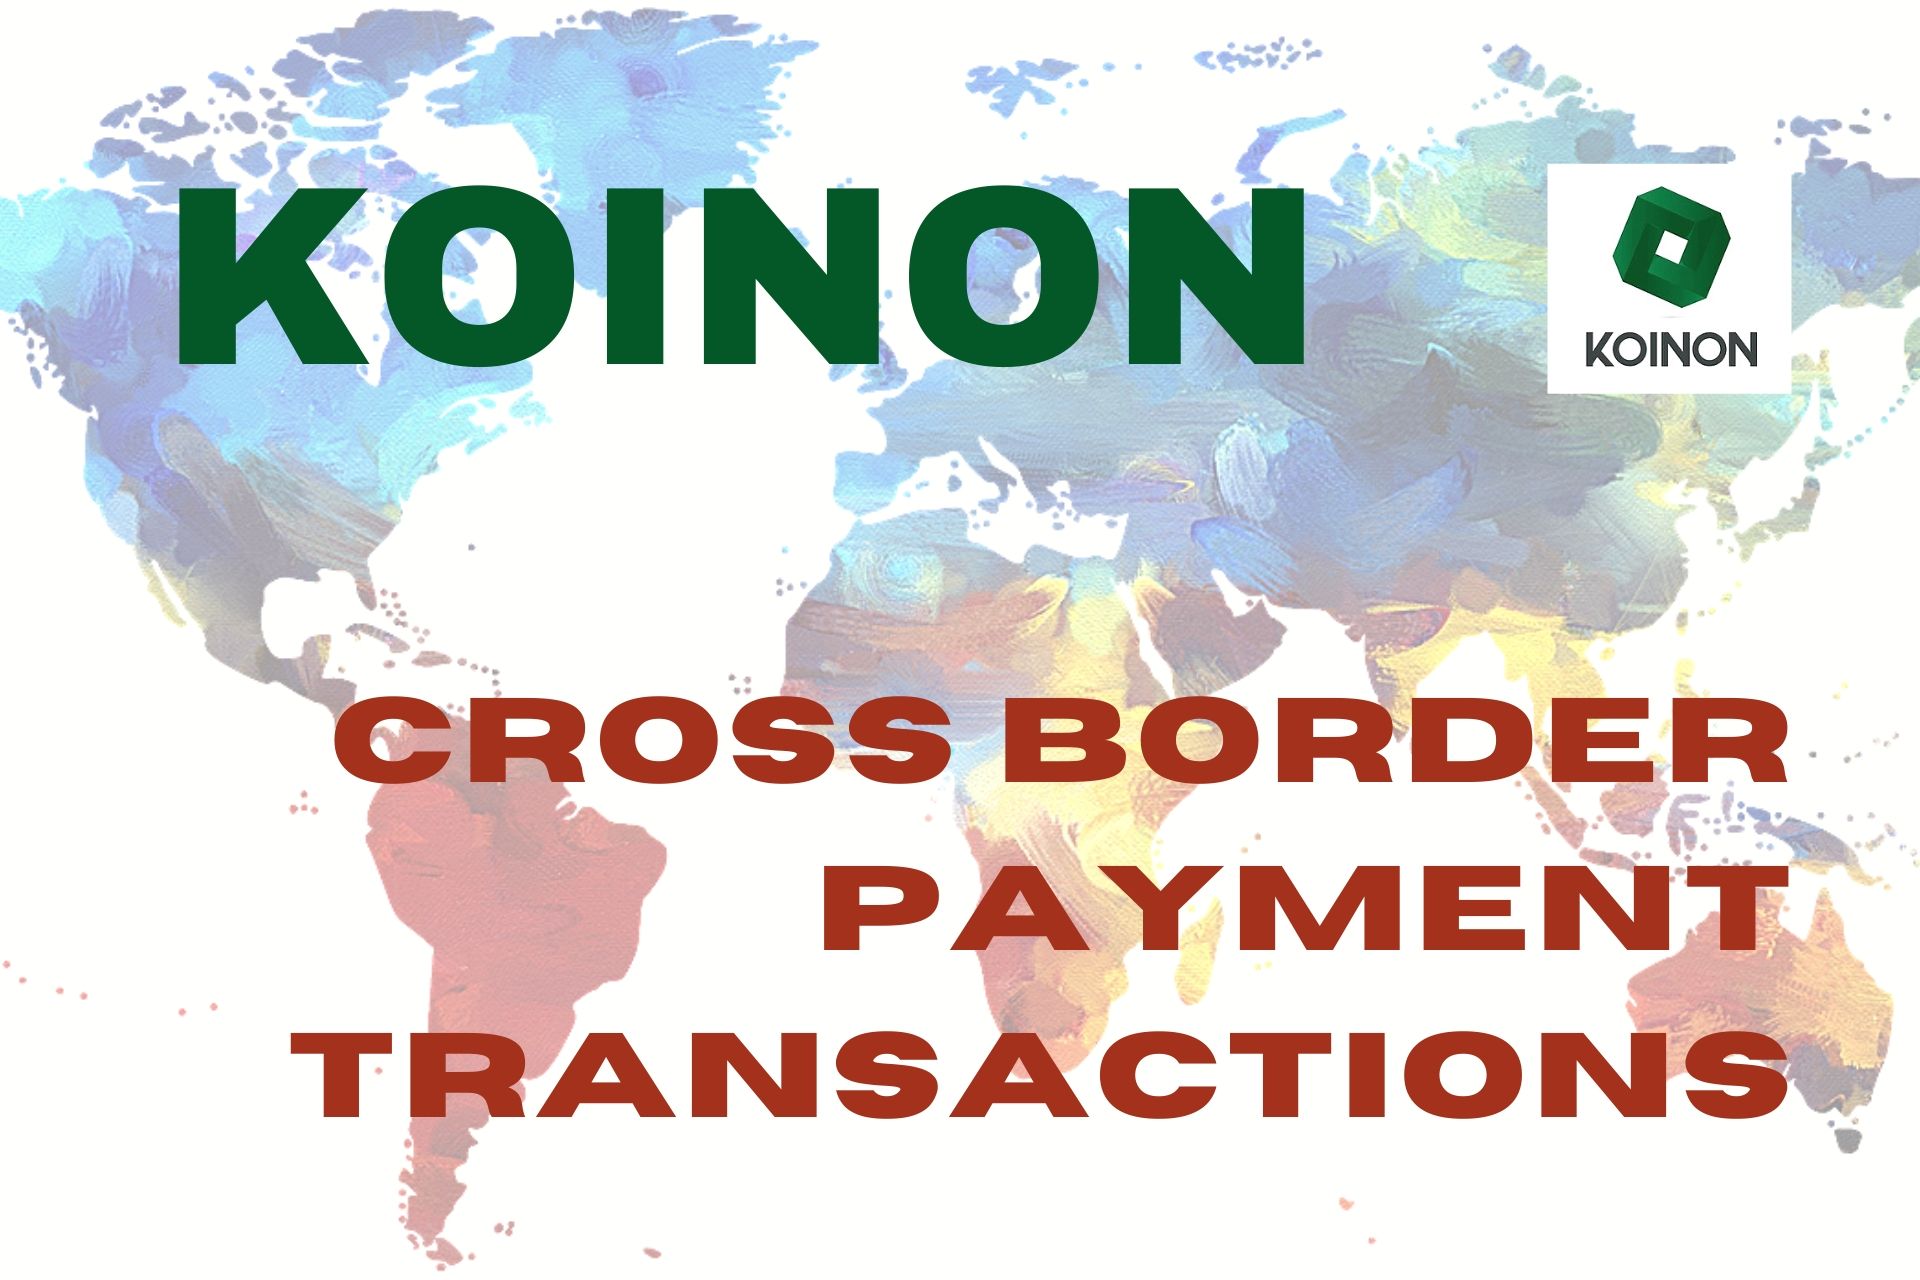 KOINON blockchain platform